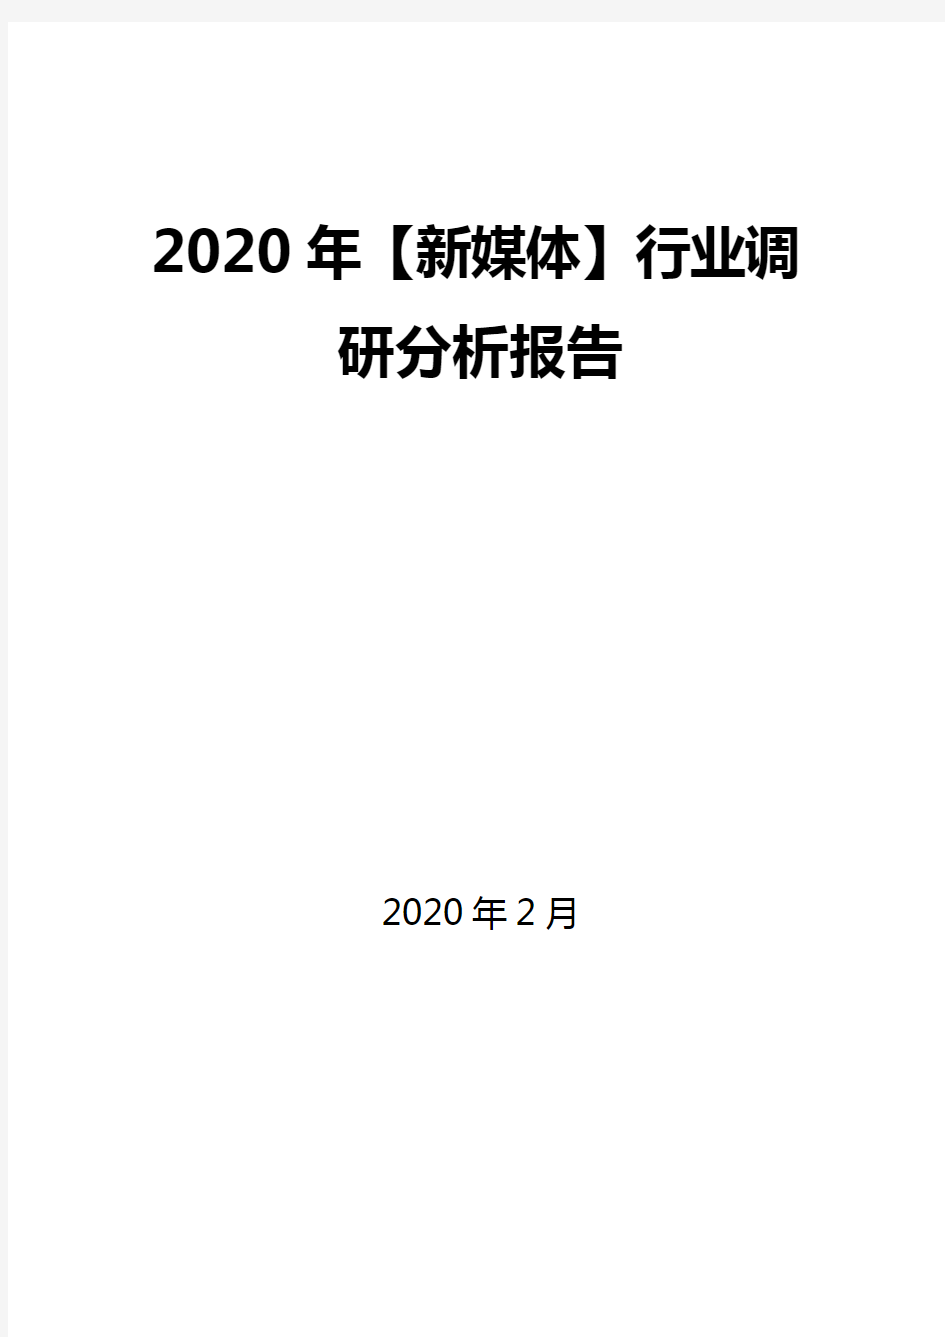 2020年【新媒体】行业调研分析报告